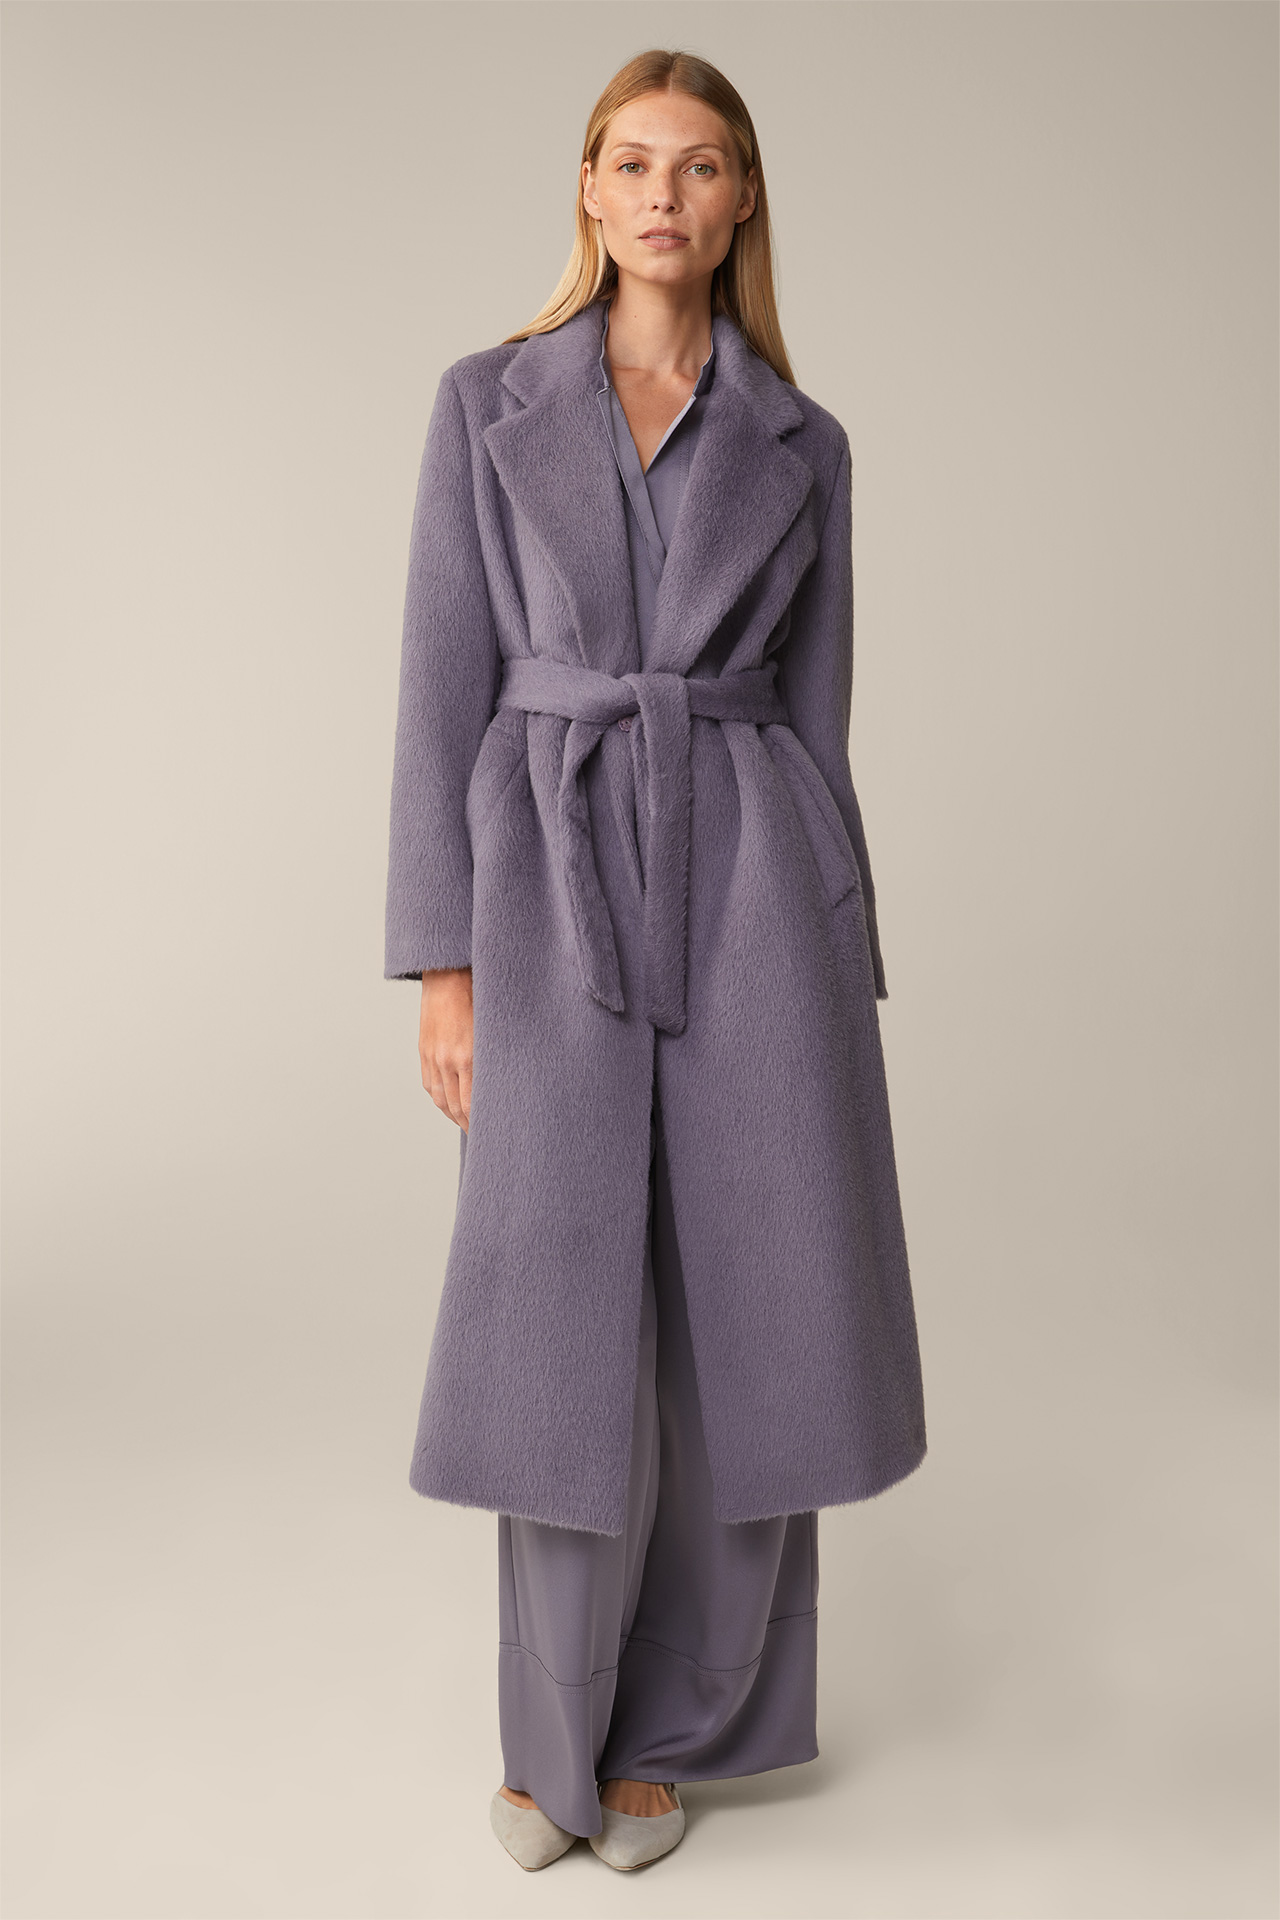 Alpaca Virgin Wool Roben Coat in Mauve/Purple